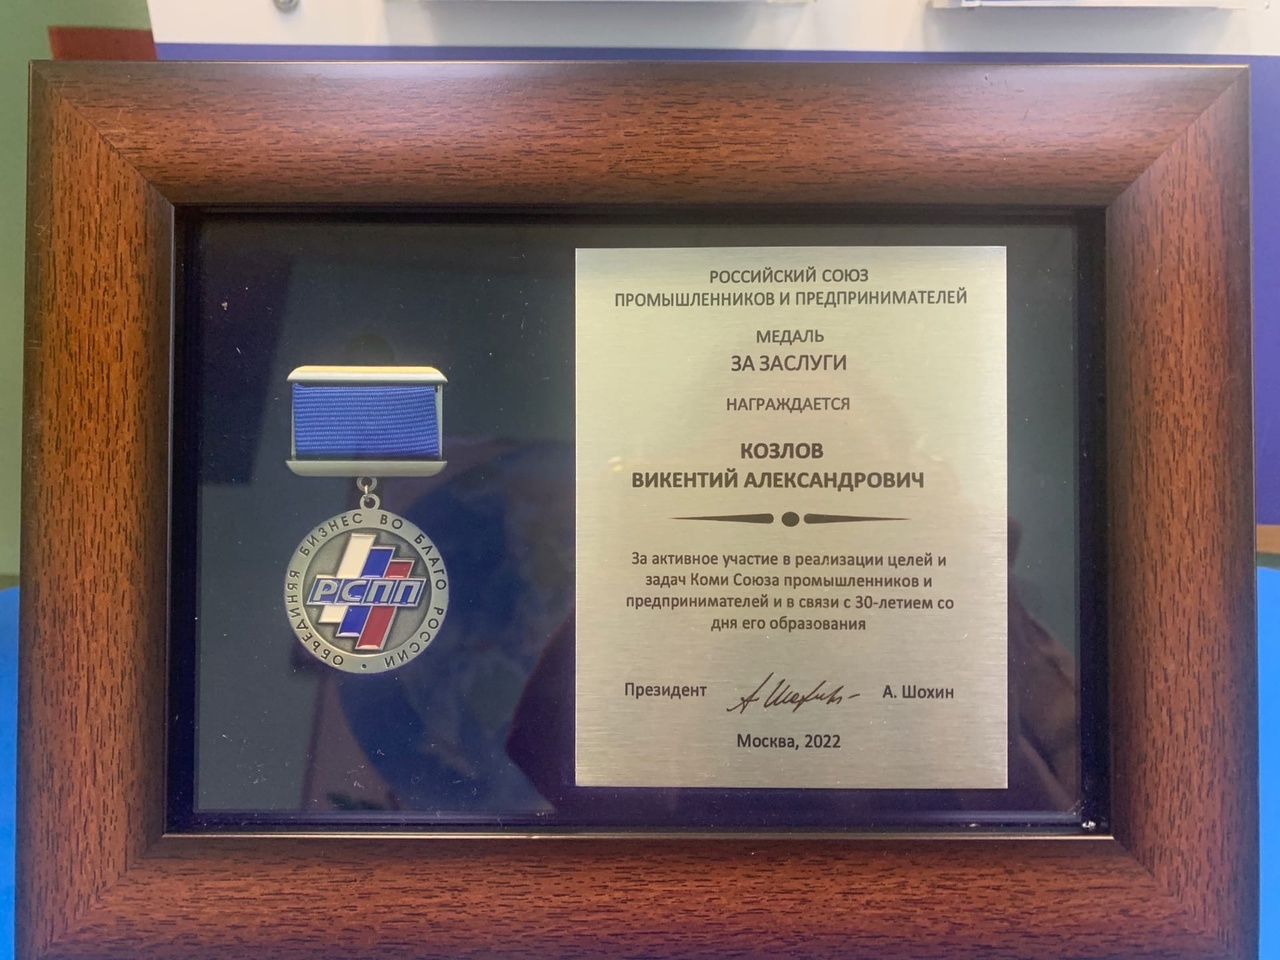 Медаль Союза промышленников и предпринимателей "За заслуги" генеральному директору ПармаТел В.А. Козлову